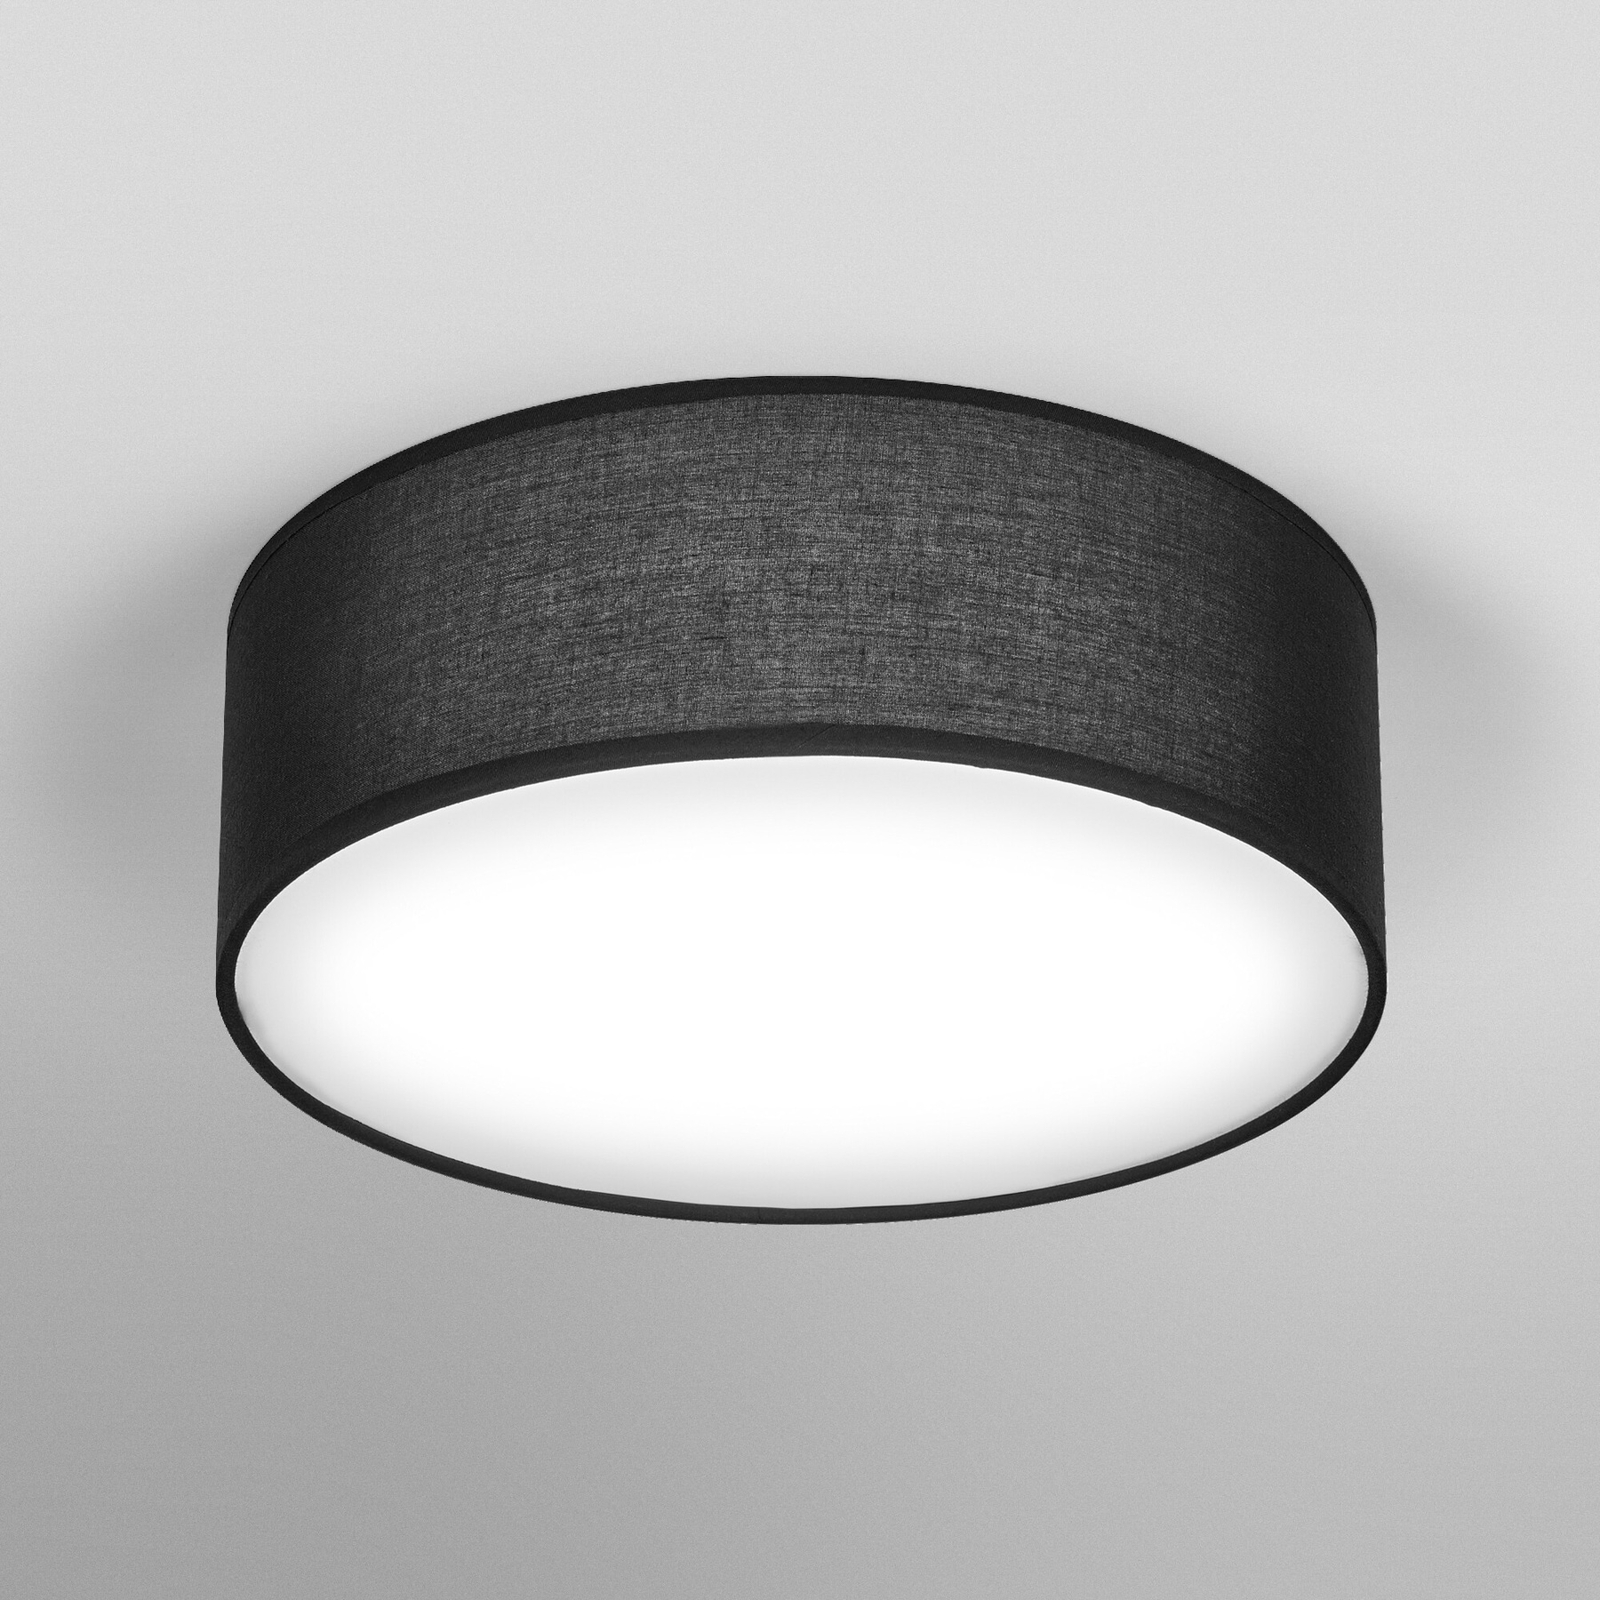 Stropní svítidlo Ledvance Orbis Paris Ø 30 cm černé